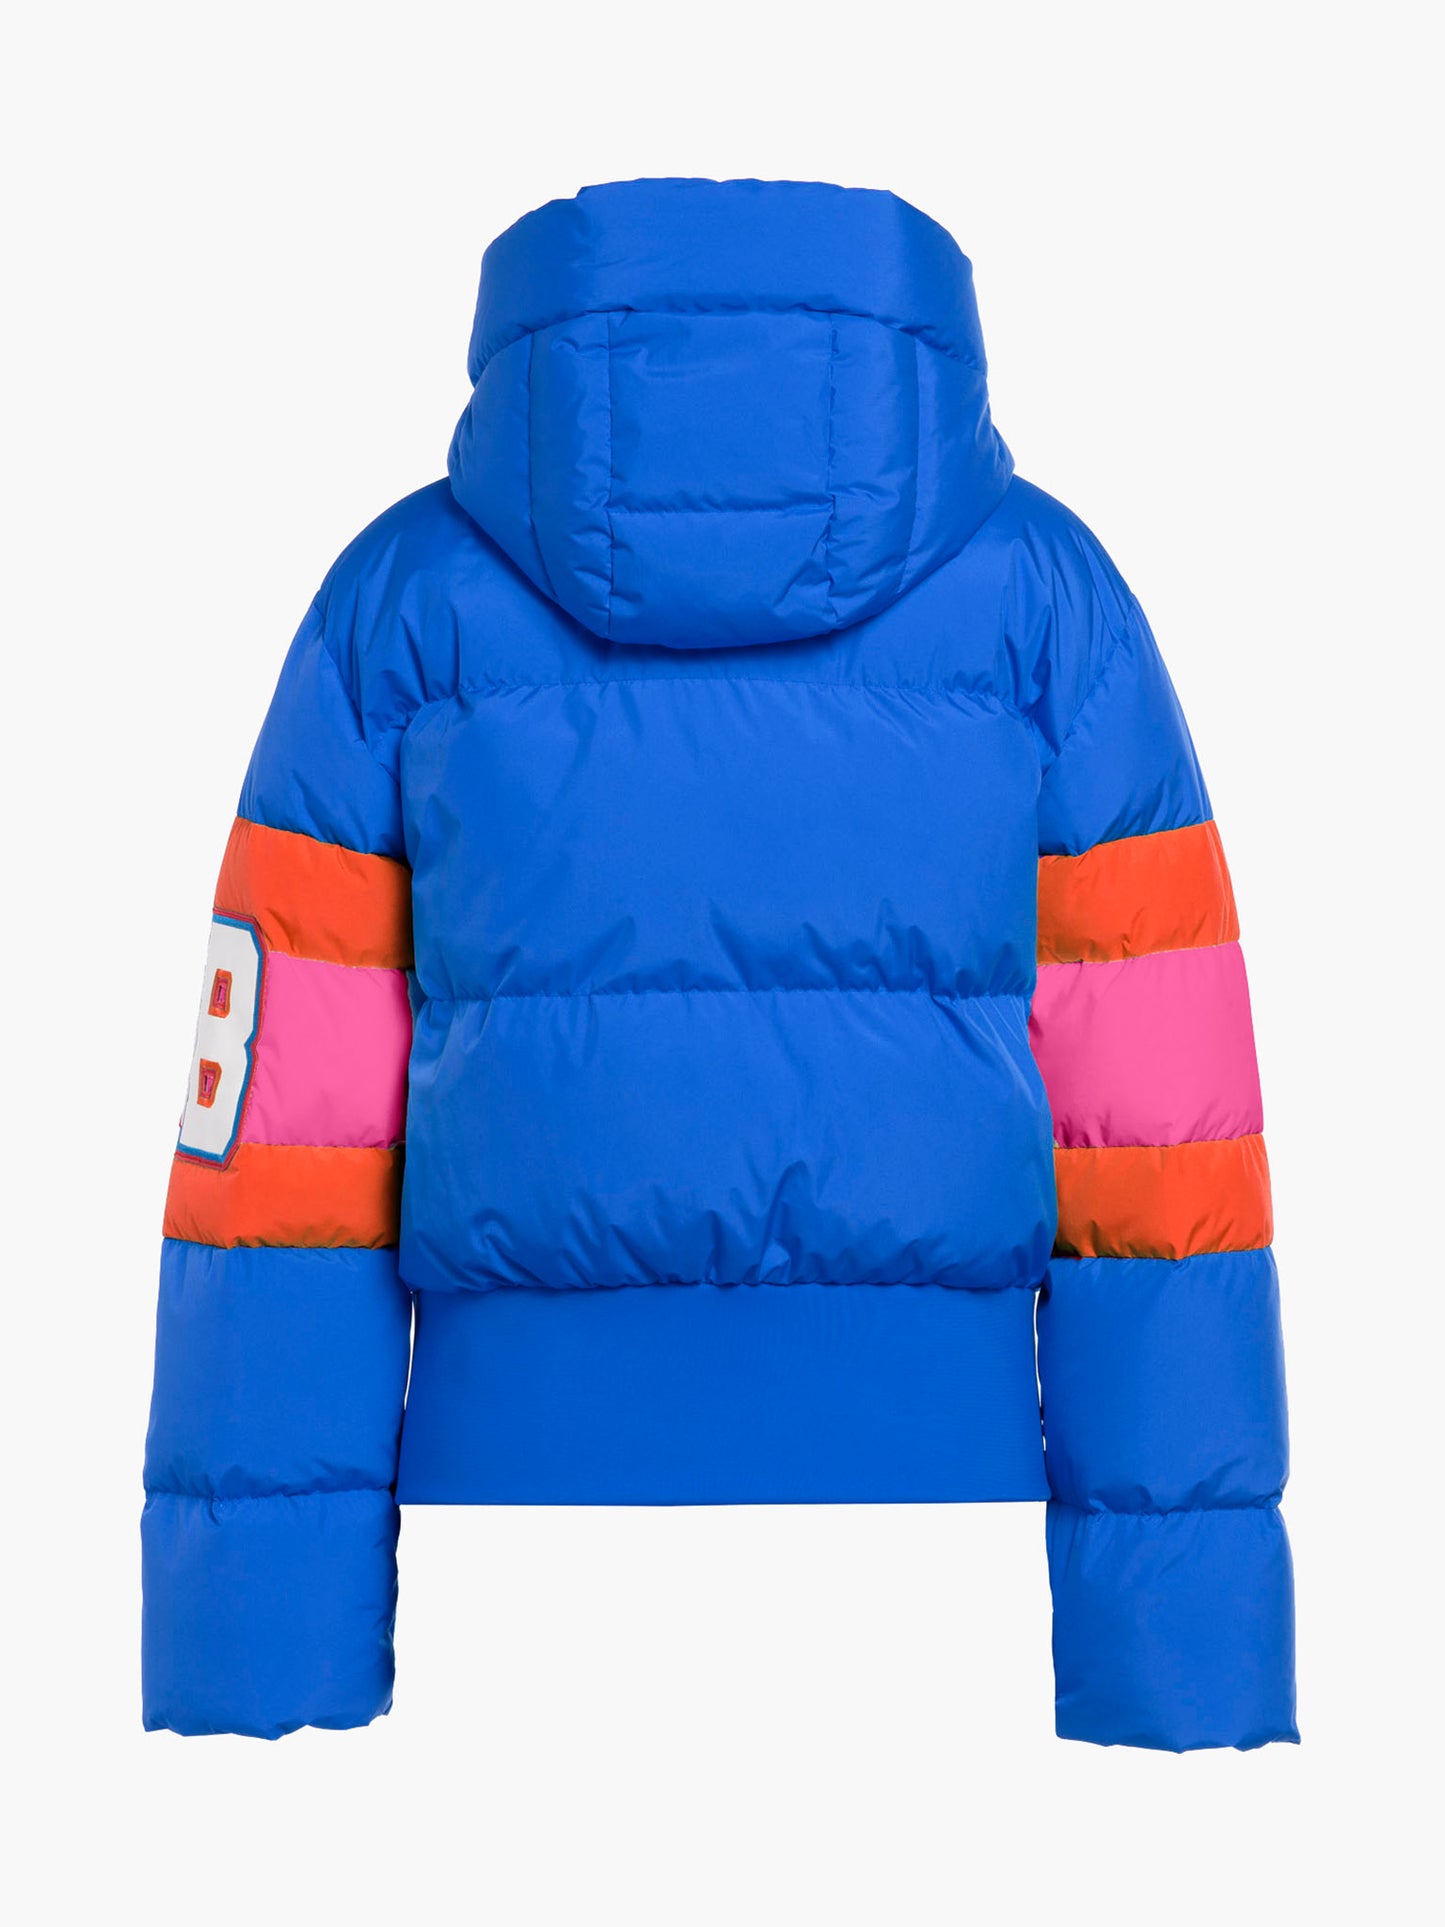 PUCK ski jacket